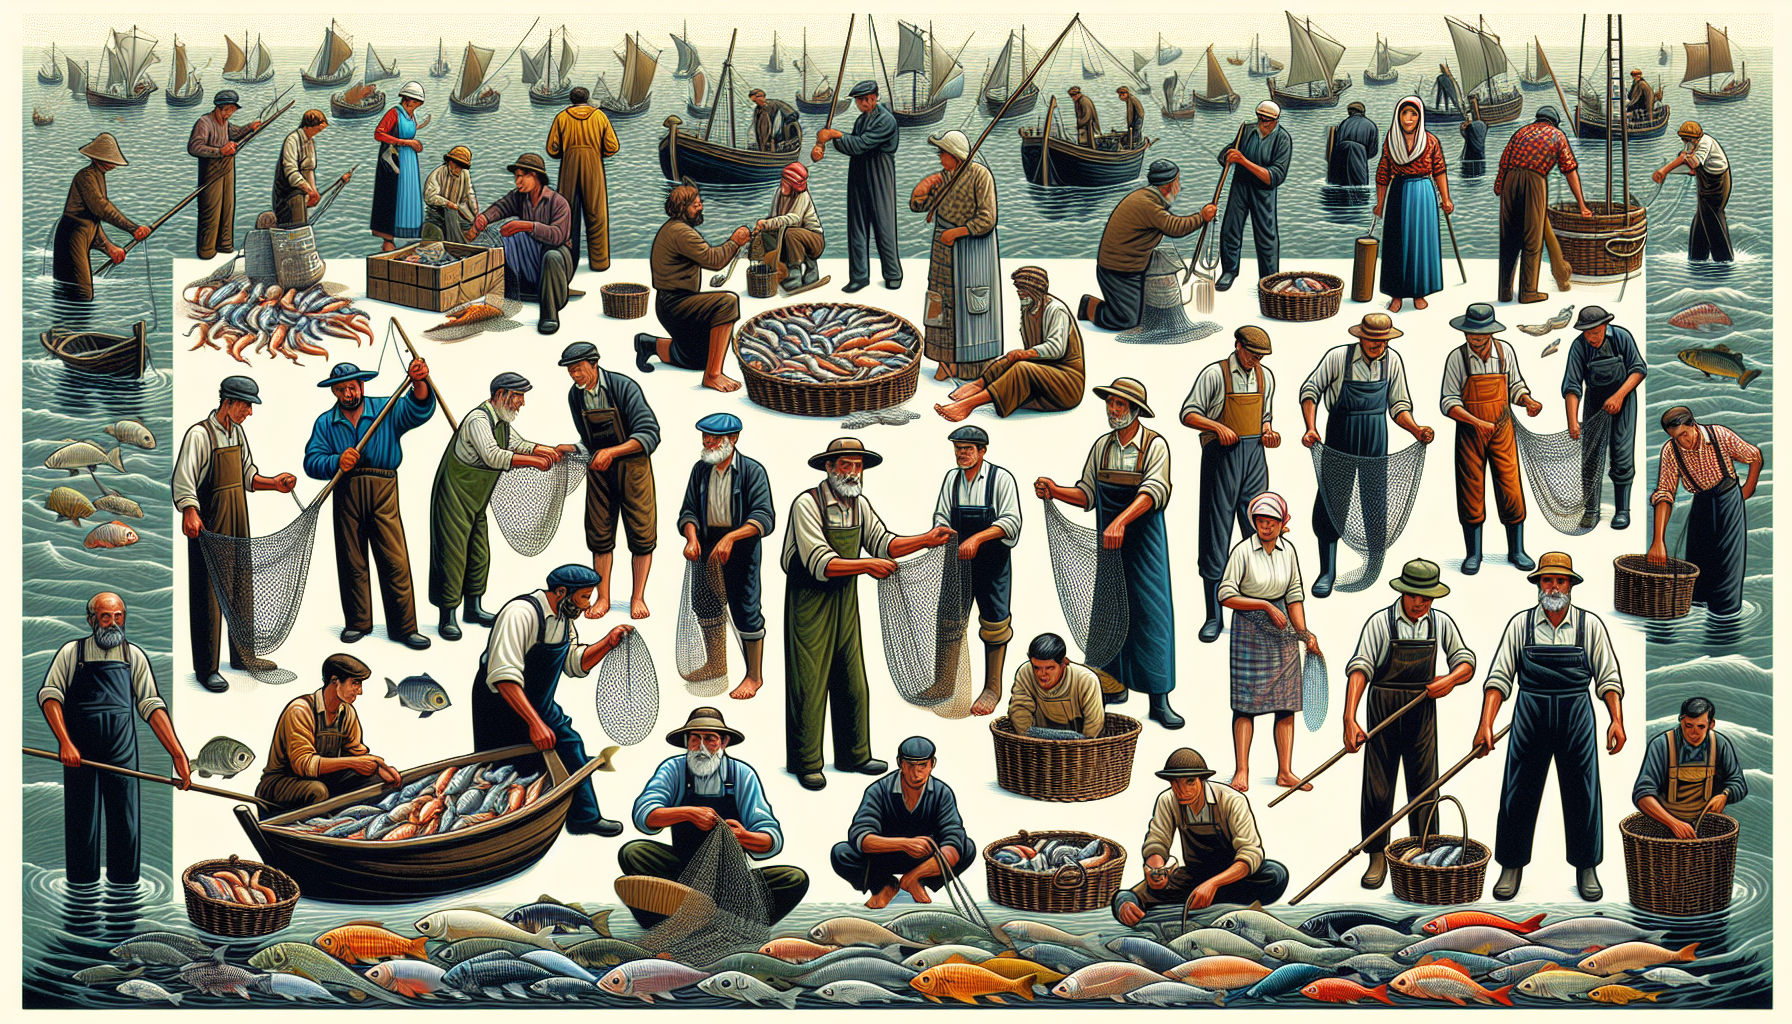 Ngư dân: Ngư dân là nghề truyền thống chủ yếu của người dân sống ven biển. Họ phụ thuộc vào biển cả để kiếm sống bằng cách đánh cá, lưới bắt hải sản.